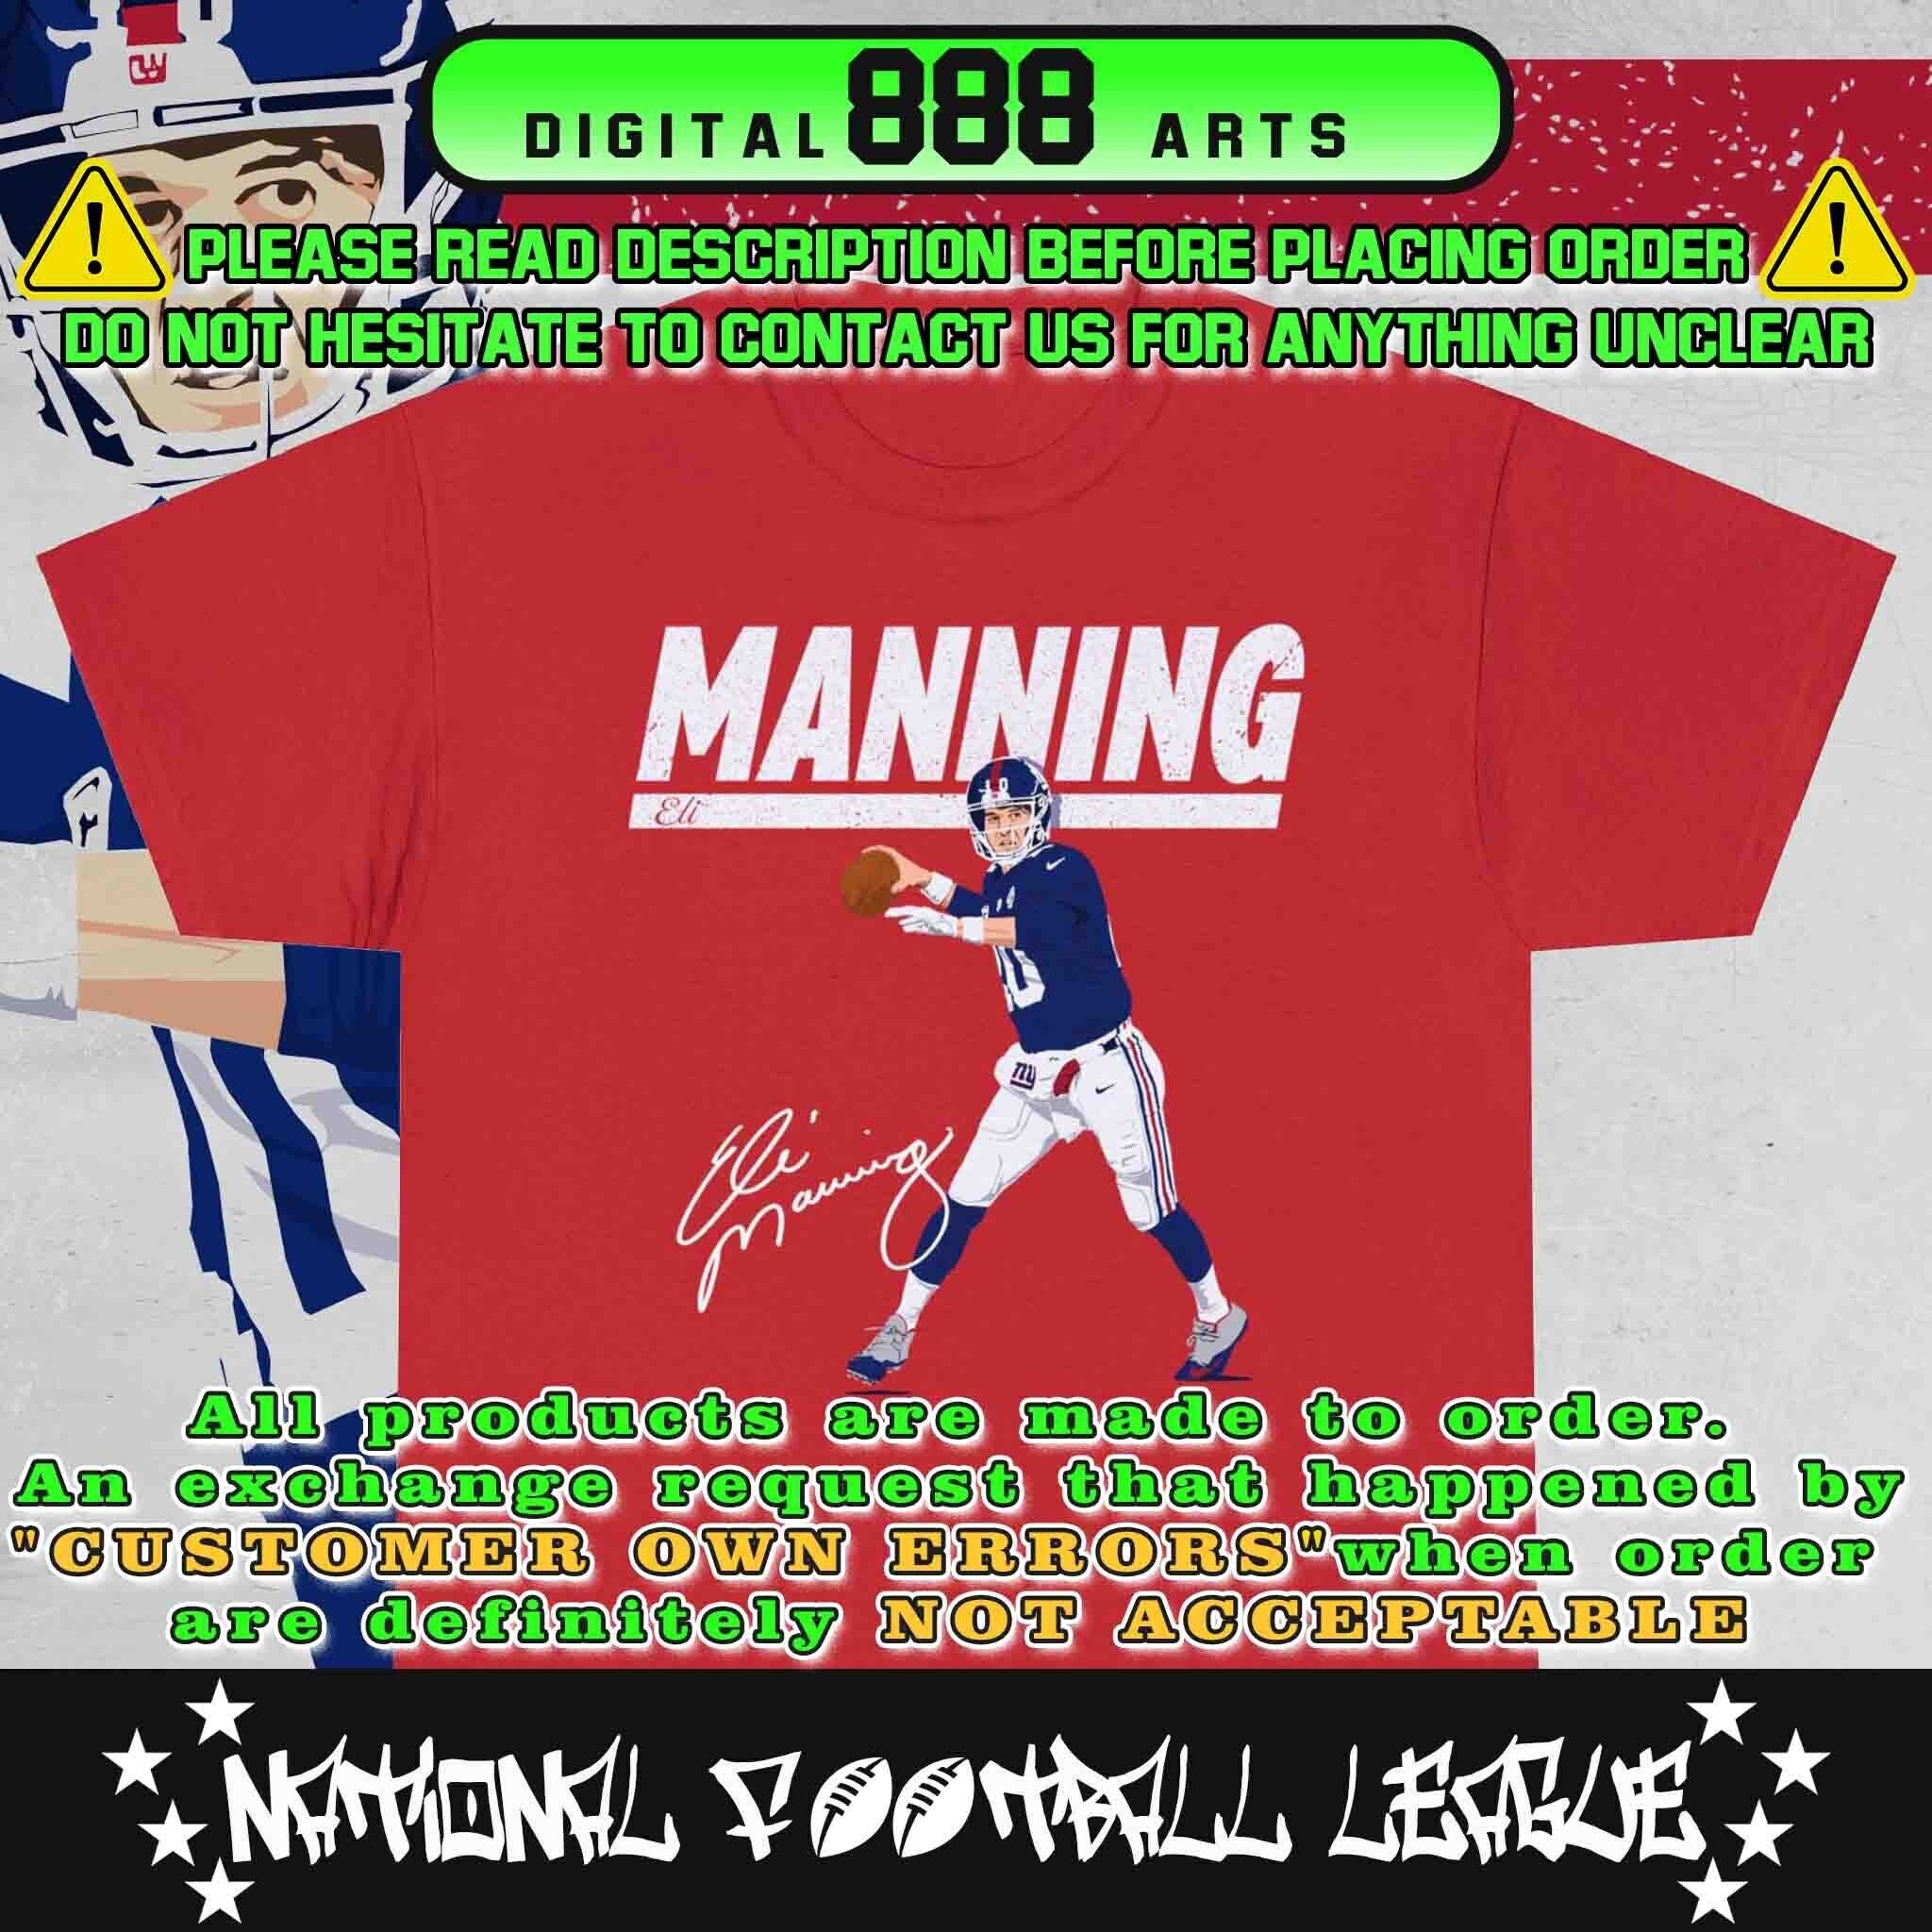 Easy E Retro Sports Graphic Tee | Funny NY Giants Eli Manning T-Shirt Royal / Medium